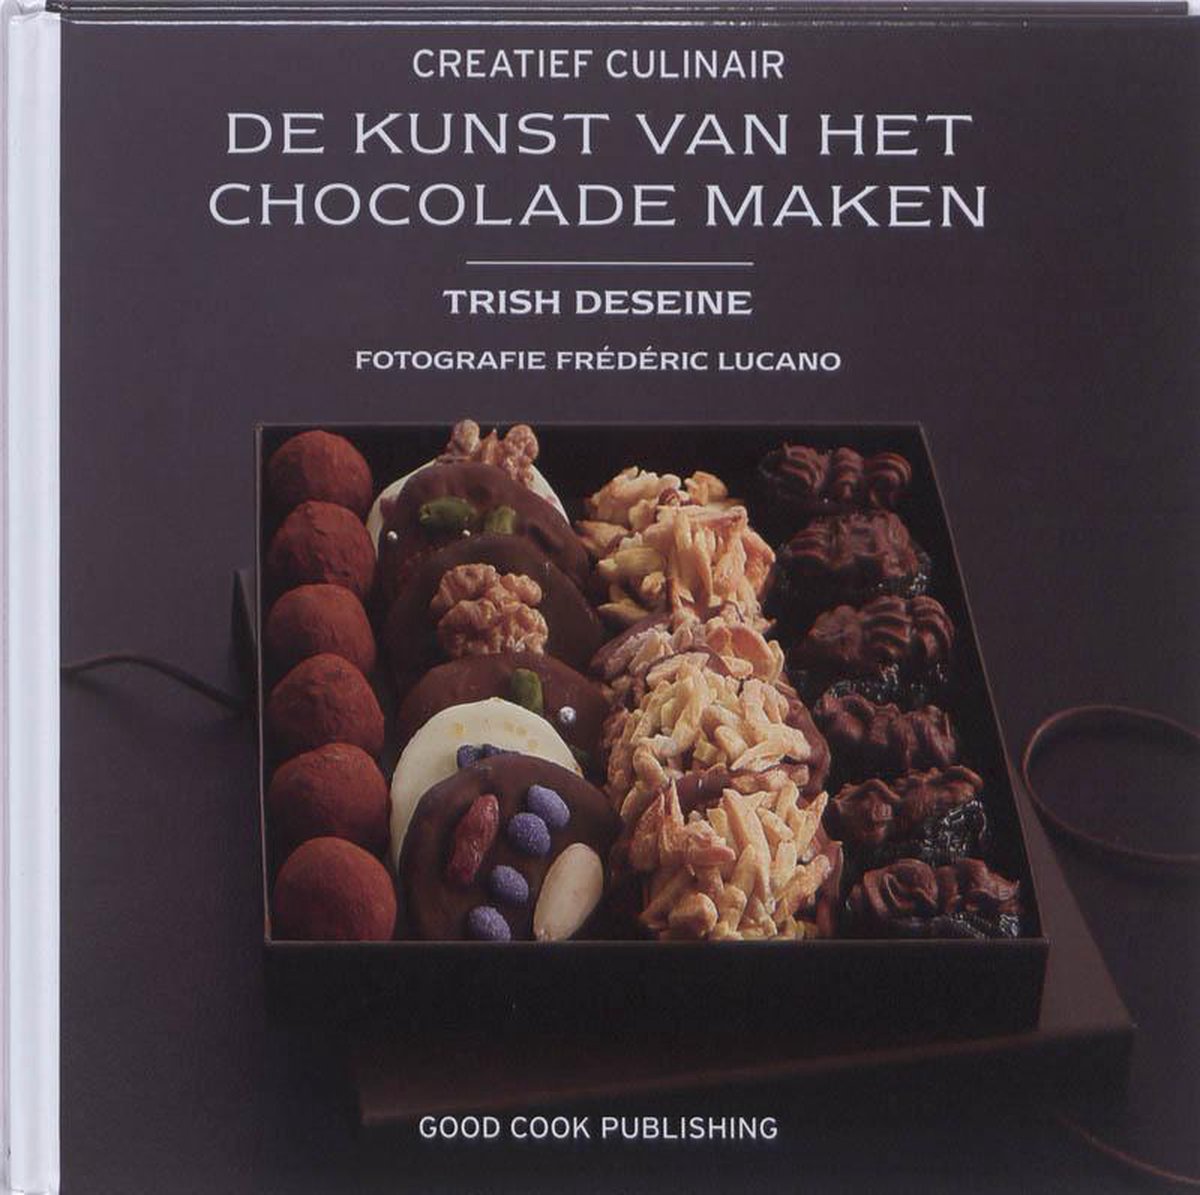 Creatief Culinair - De kunst van het chocolade maken